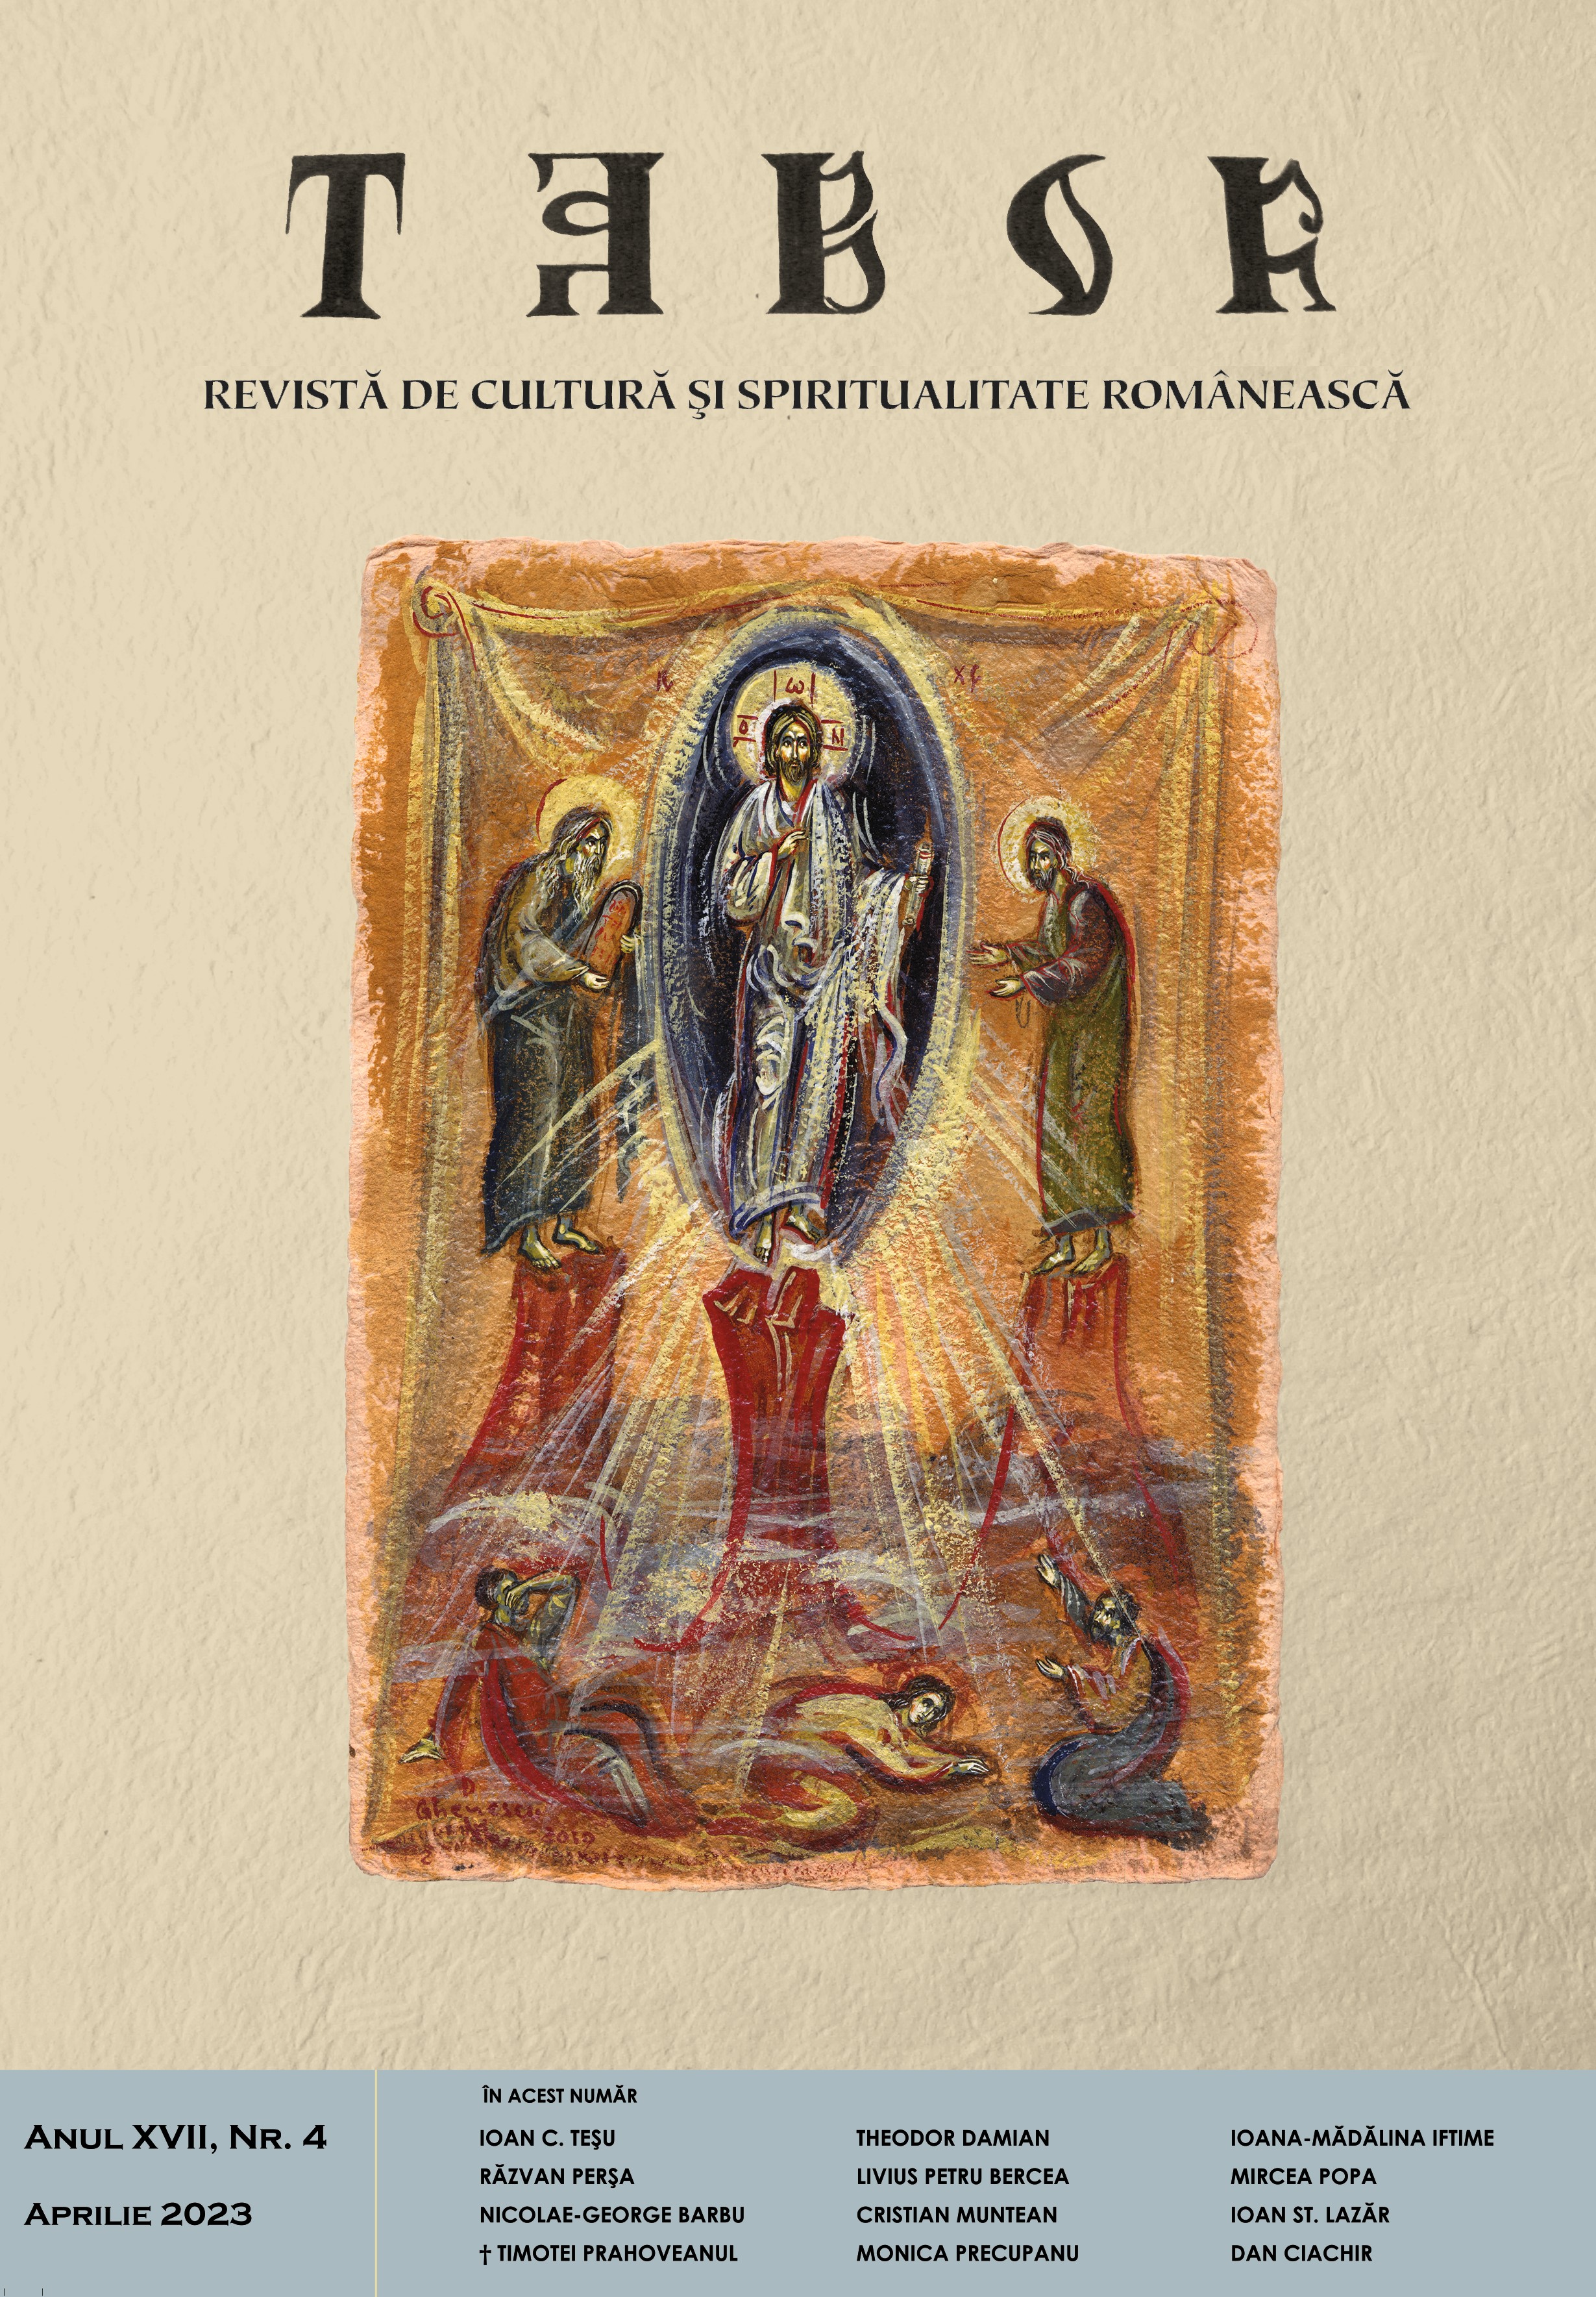 Father Professor Ioan Chirilă and Rădăcinile veşniciei Cover Image